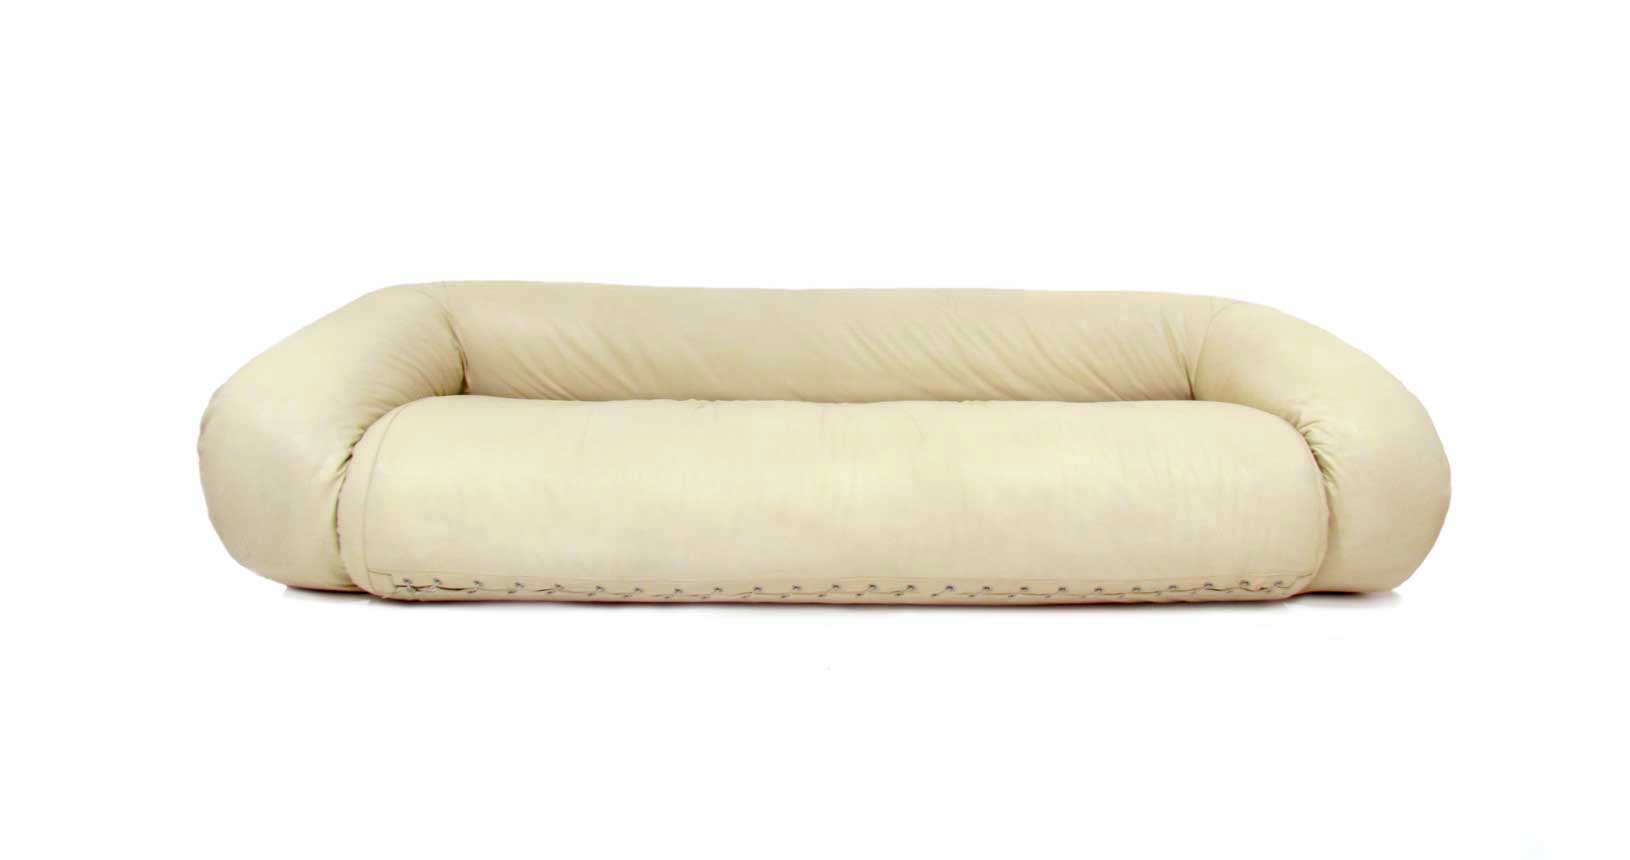 anfibio sofa vintage design iconicdesign furniture leather alessandro becchi giovannetti